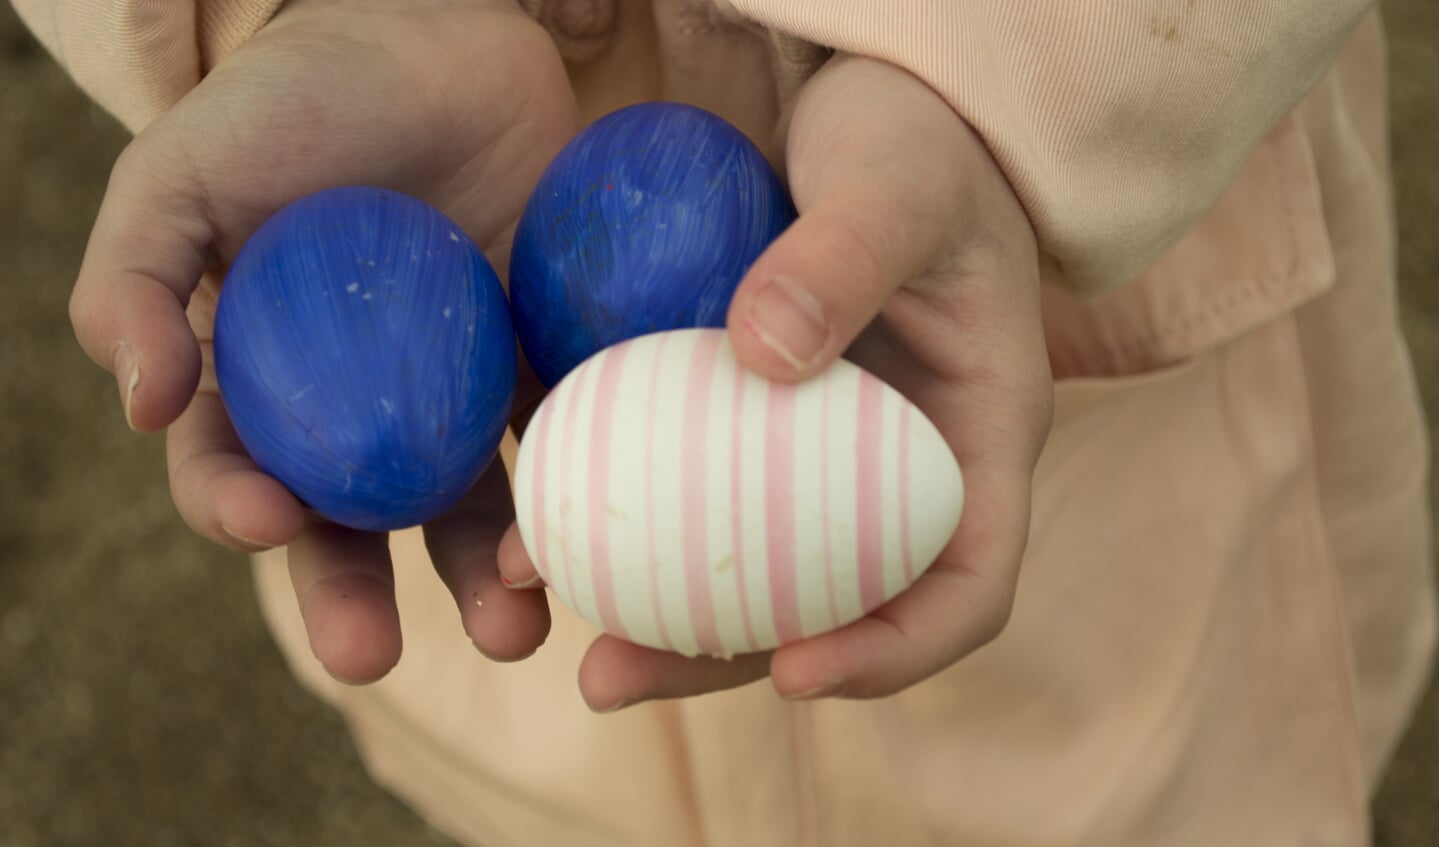 twee kinderhanden houden drie gekleurde eieren vast